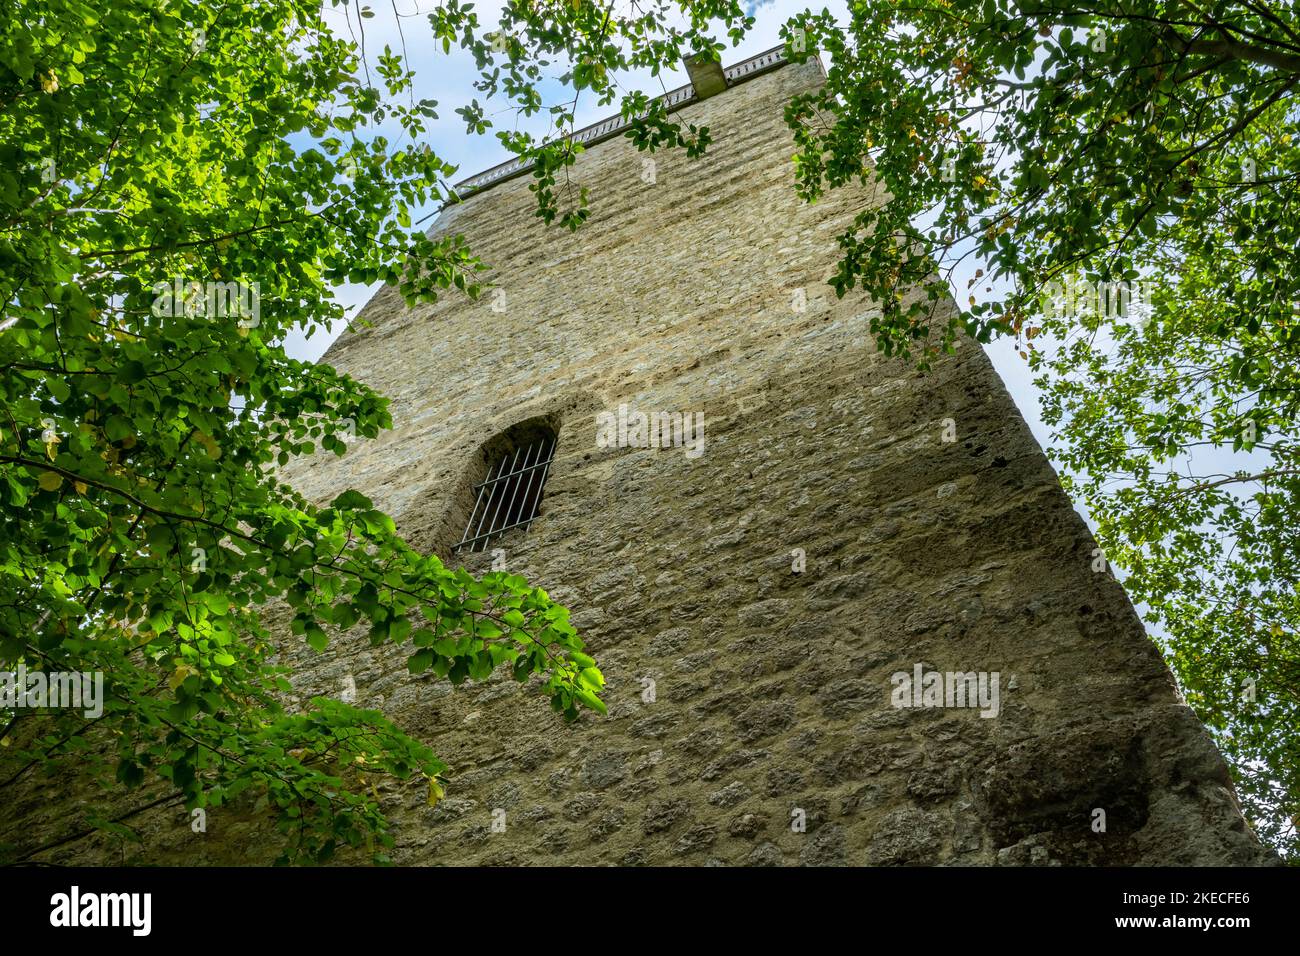 Die Ruine Reichenstein liegt auf einem kleinen Sporn am rechten Rand des Lautertals. Die Burg wurde zwischen 1230 und 1250 erbaut. Nur der Staushalt und der Nackengraben wurden aus dem Komplex erhalten. Stockfoto